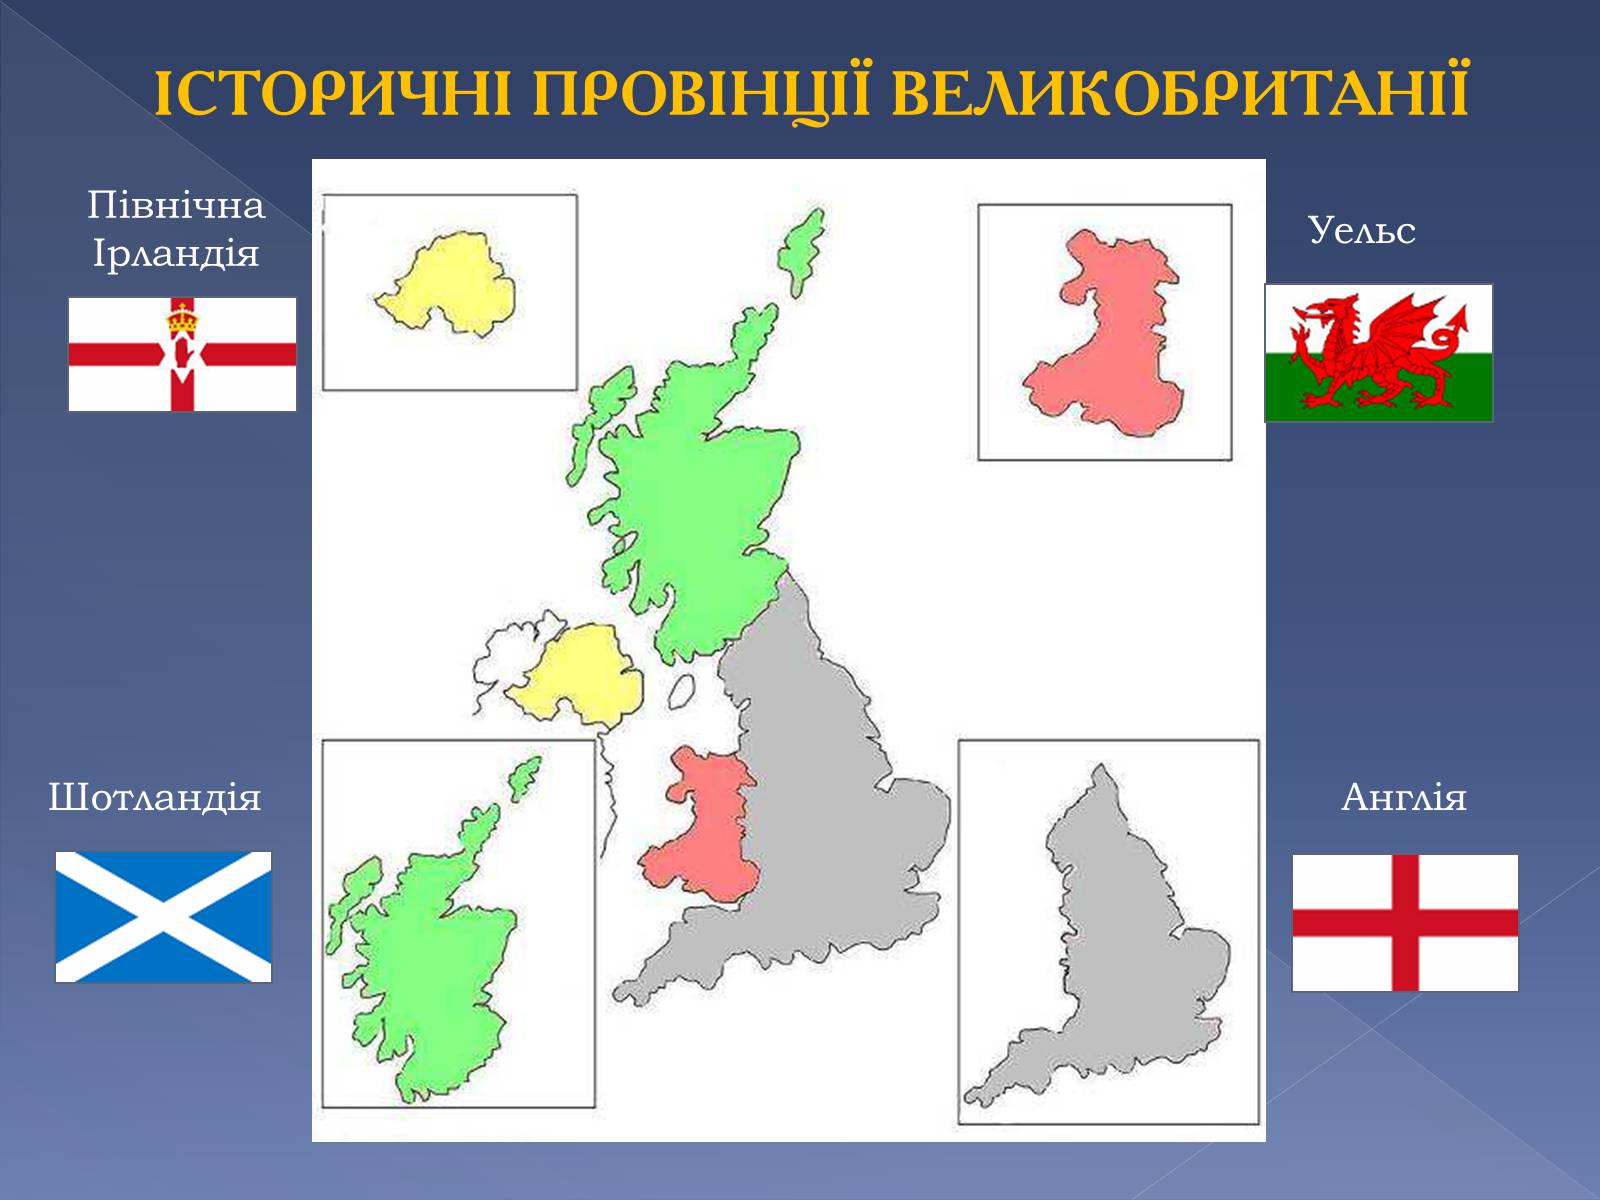 Флаги Англии Шотландии Уэльса и Северной Ирландии